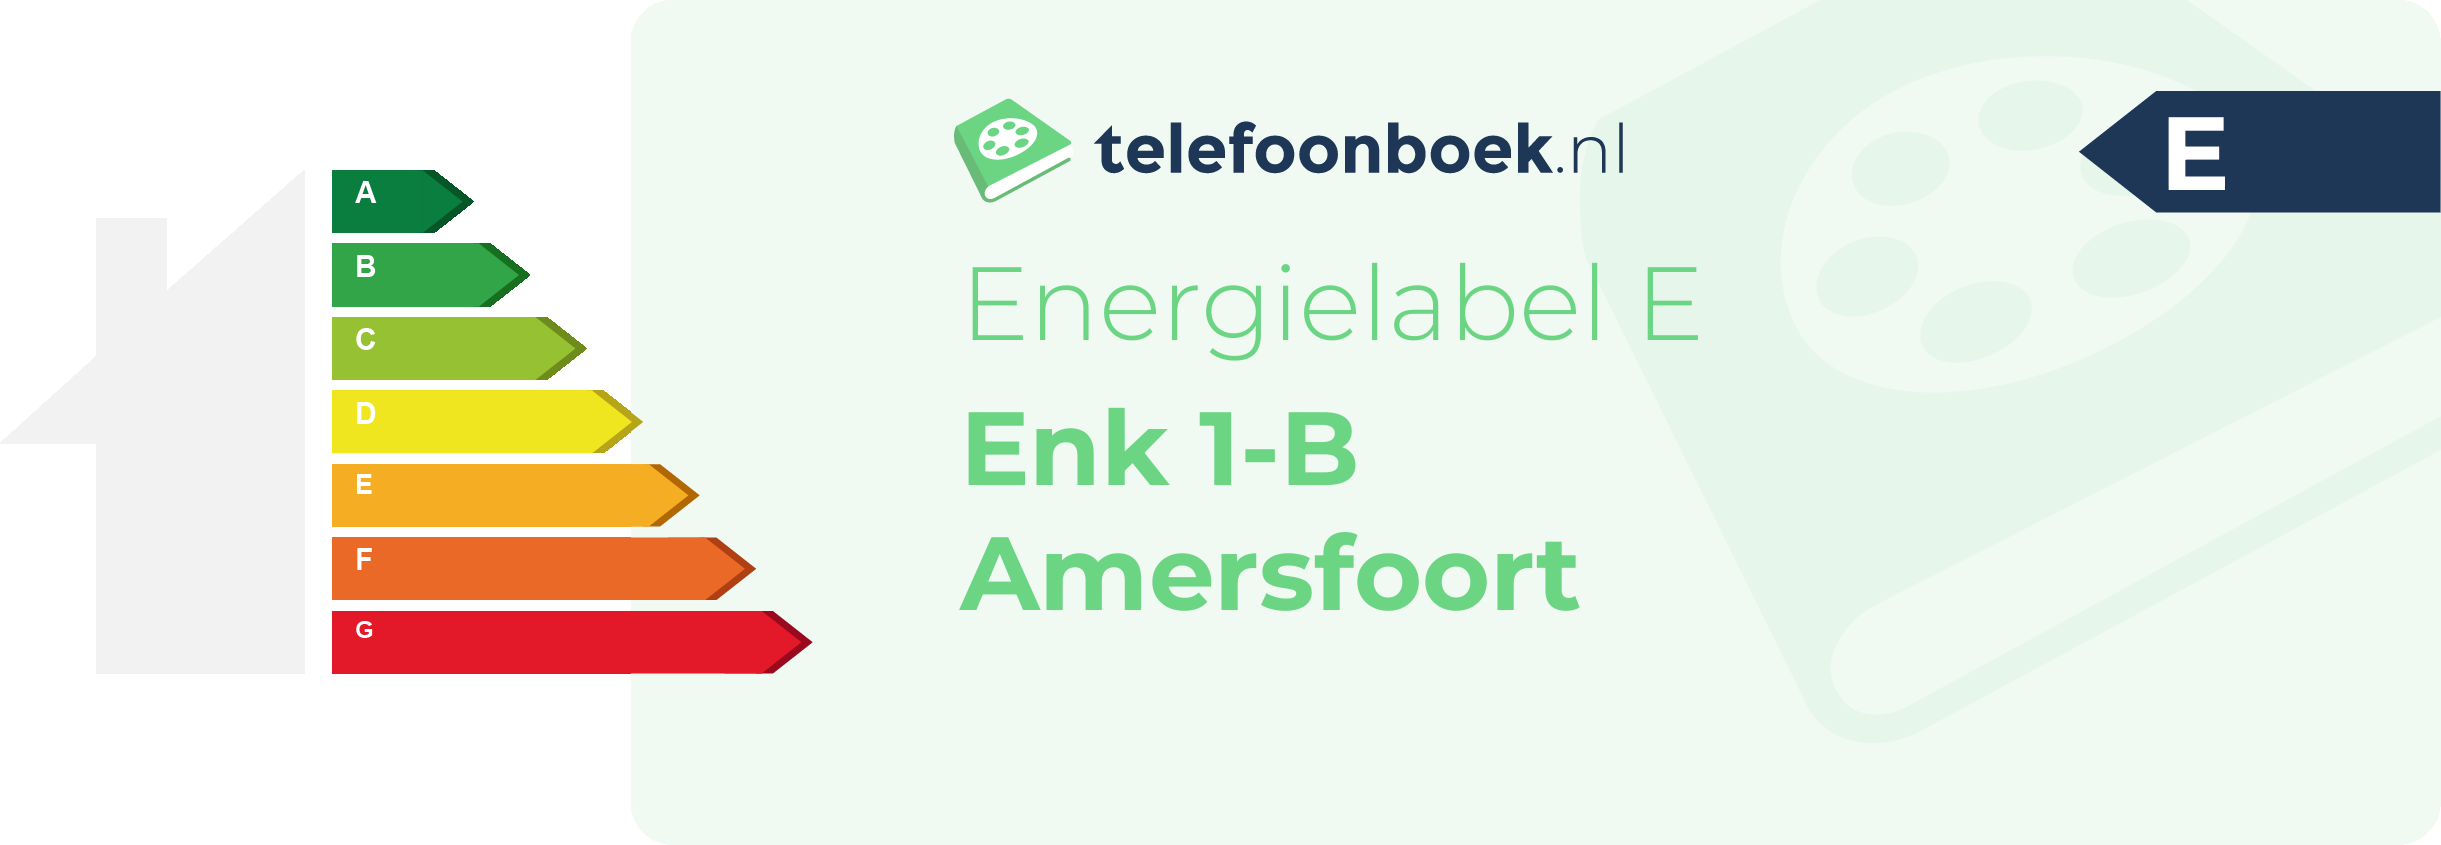 Energielabel Enk 1-B Amersfoort